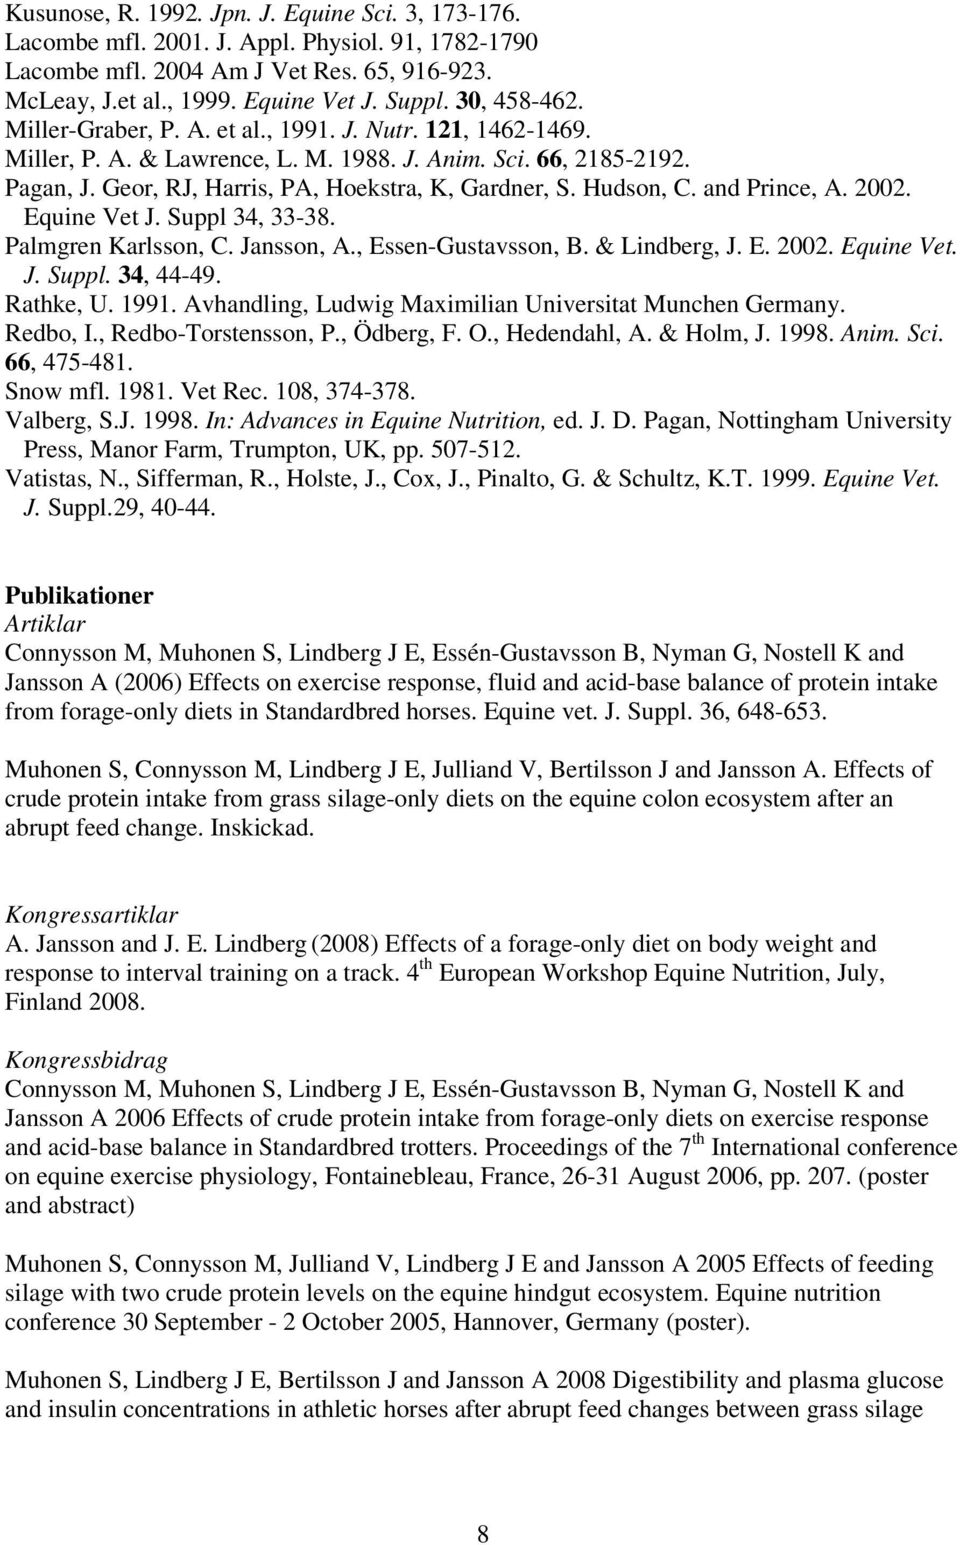 Hudson, C. and Prince, A. 2002. Equine Vet J. Suppl 34, 33-38. Palmgren Karlsson, C. Jansson, A., Essen-Gustavsson, B. & Lindberg, J. E. 2002. Equine Vet. J. Suppl. 34, 44-49. Rathke, U. 1991.